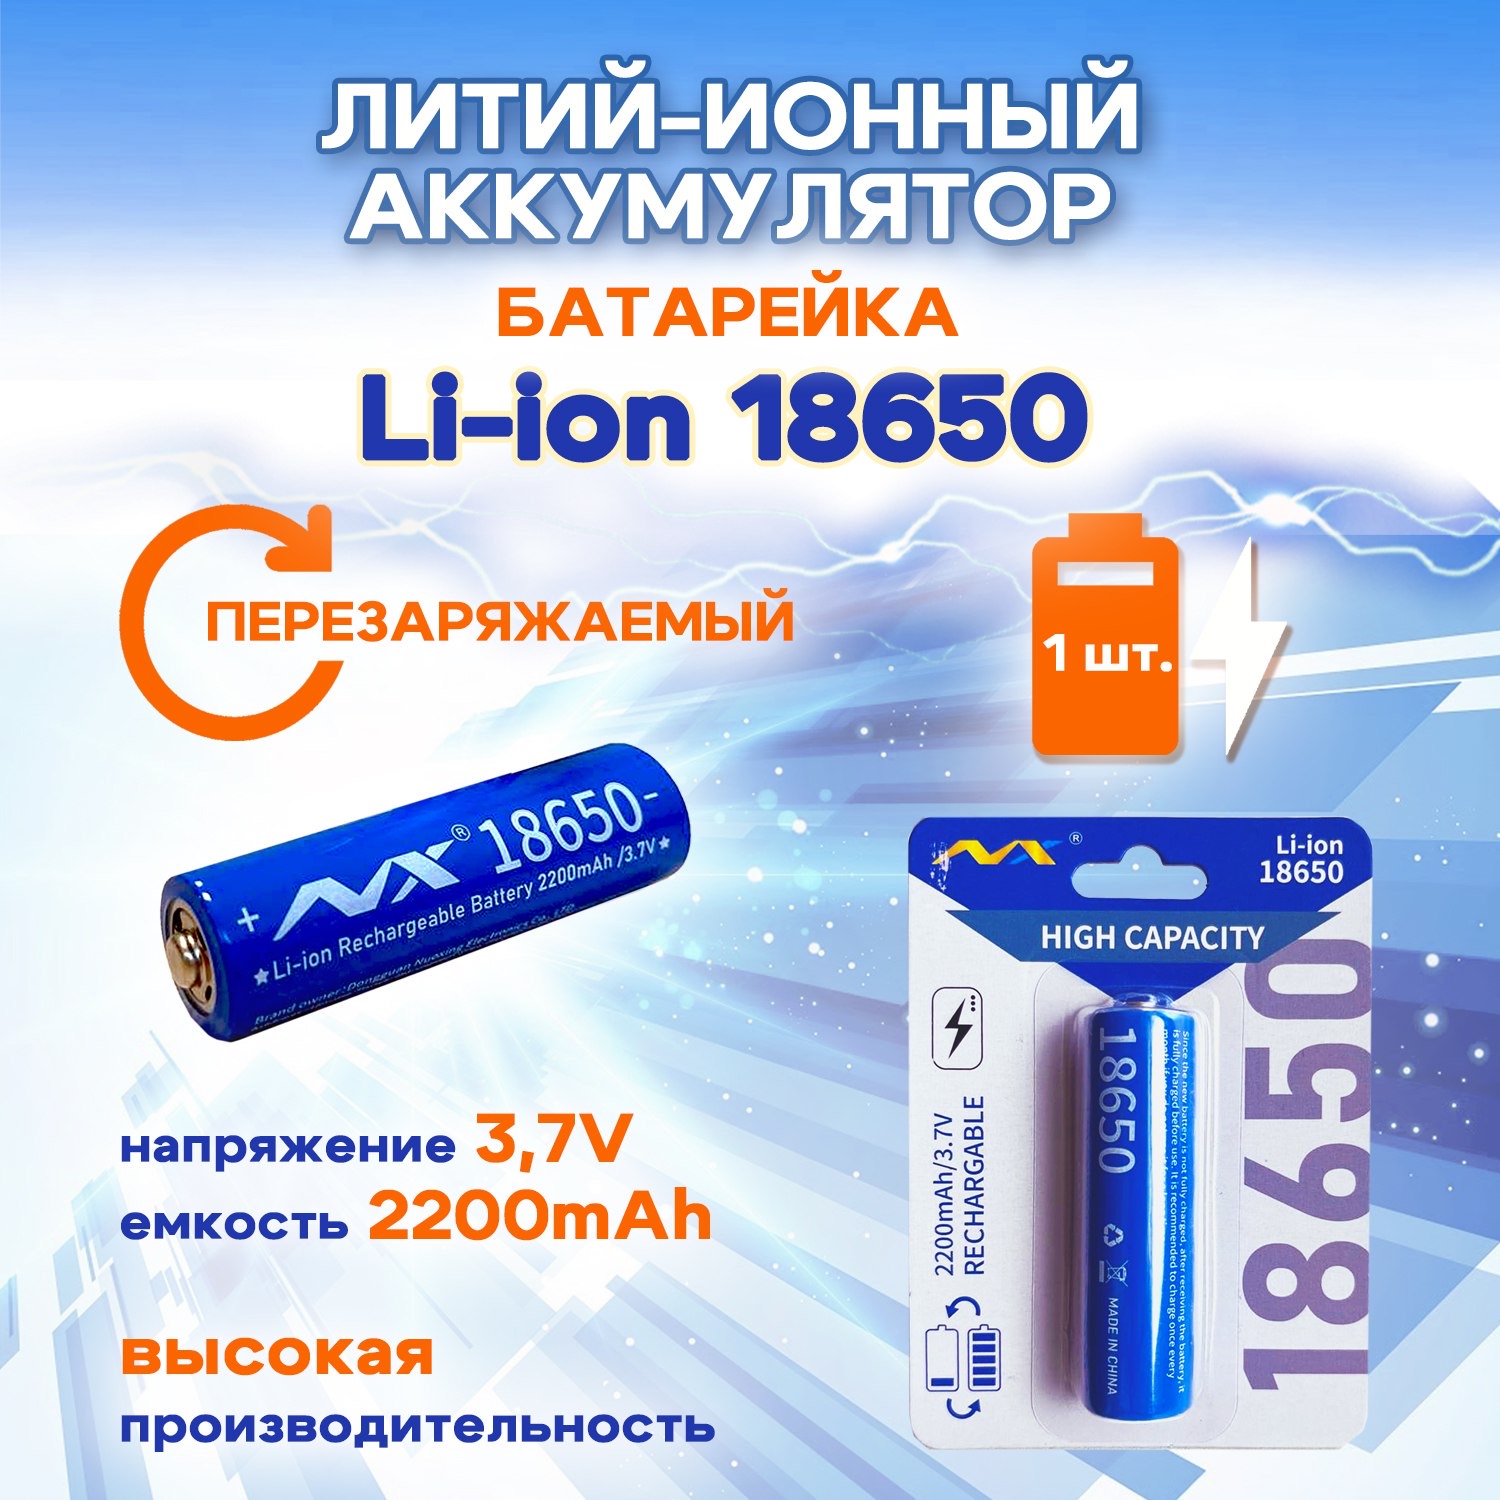 Батарейка-аккумулятор SUPER ENERGY 18650 3,7 В литий-ионный перезаряжаемый 2200 mAh, 1 шт портсигар на 20 сигарет 9 х 8 7 х 1 8 см